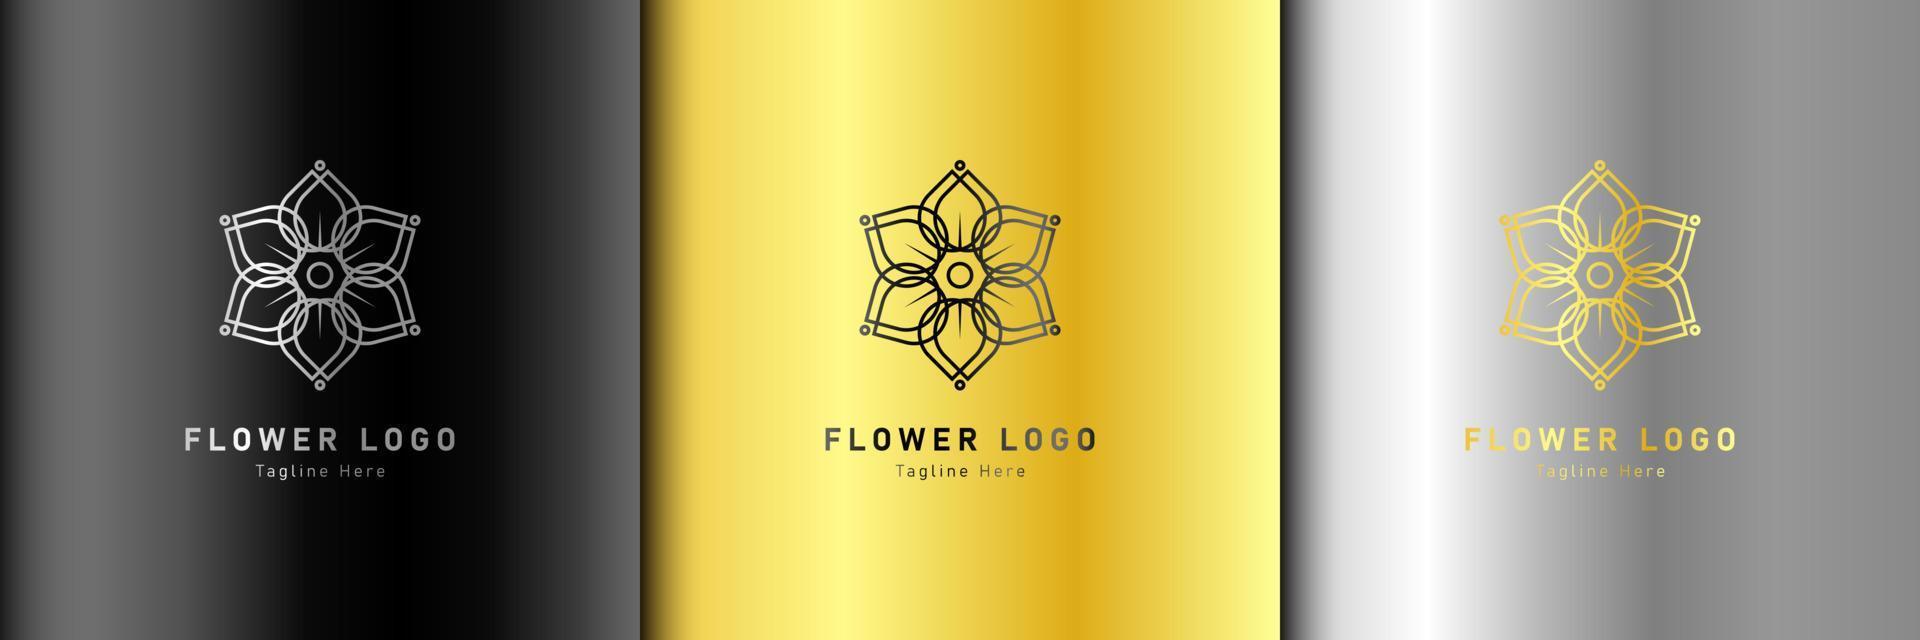 lyx guld skönhet blomma spa logotyp mall wellness design för hälsa wellness företag vektor